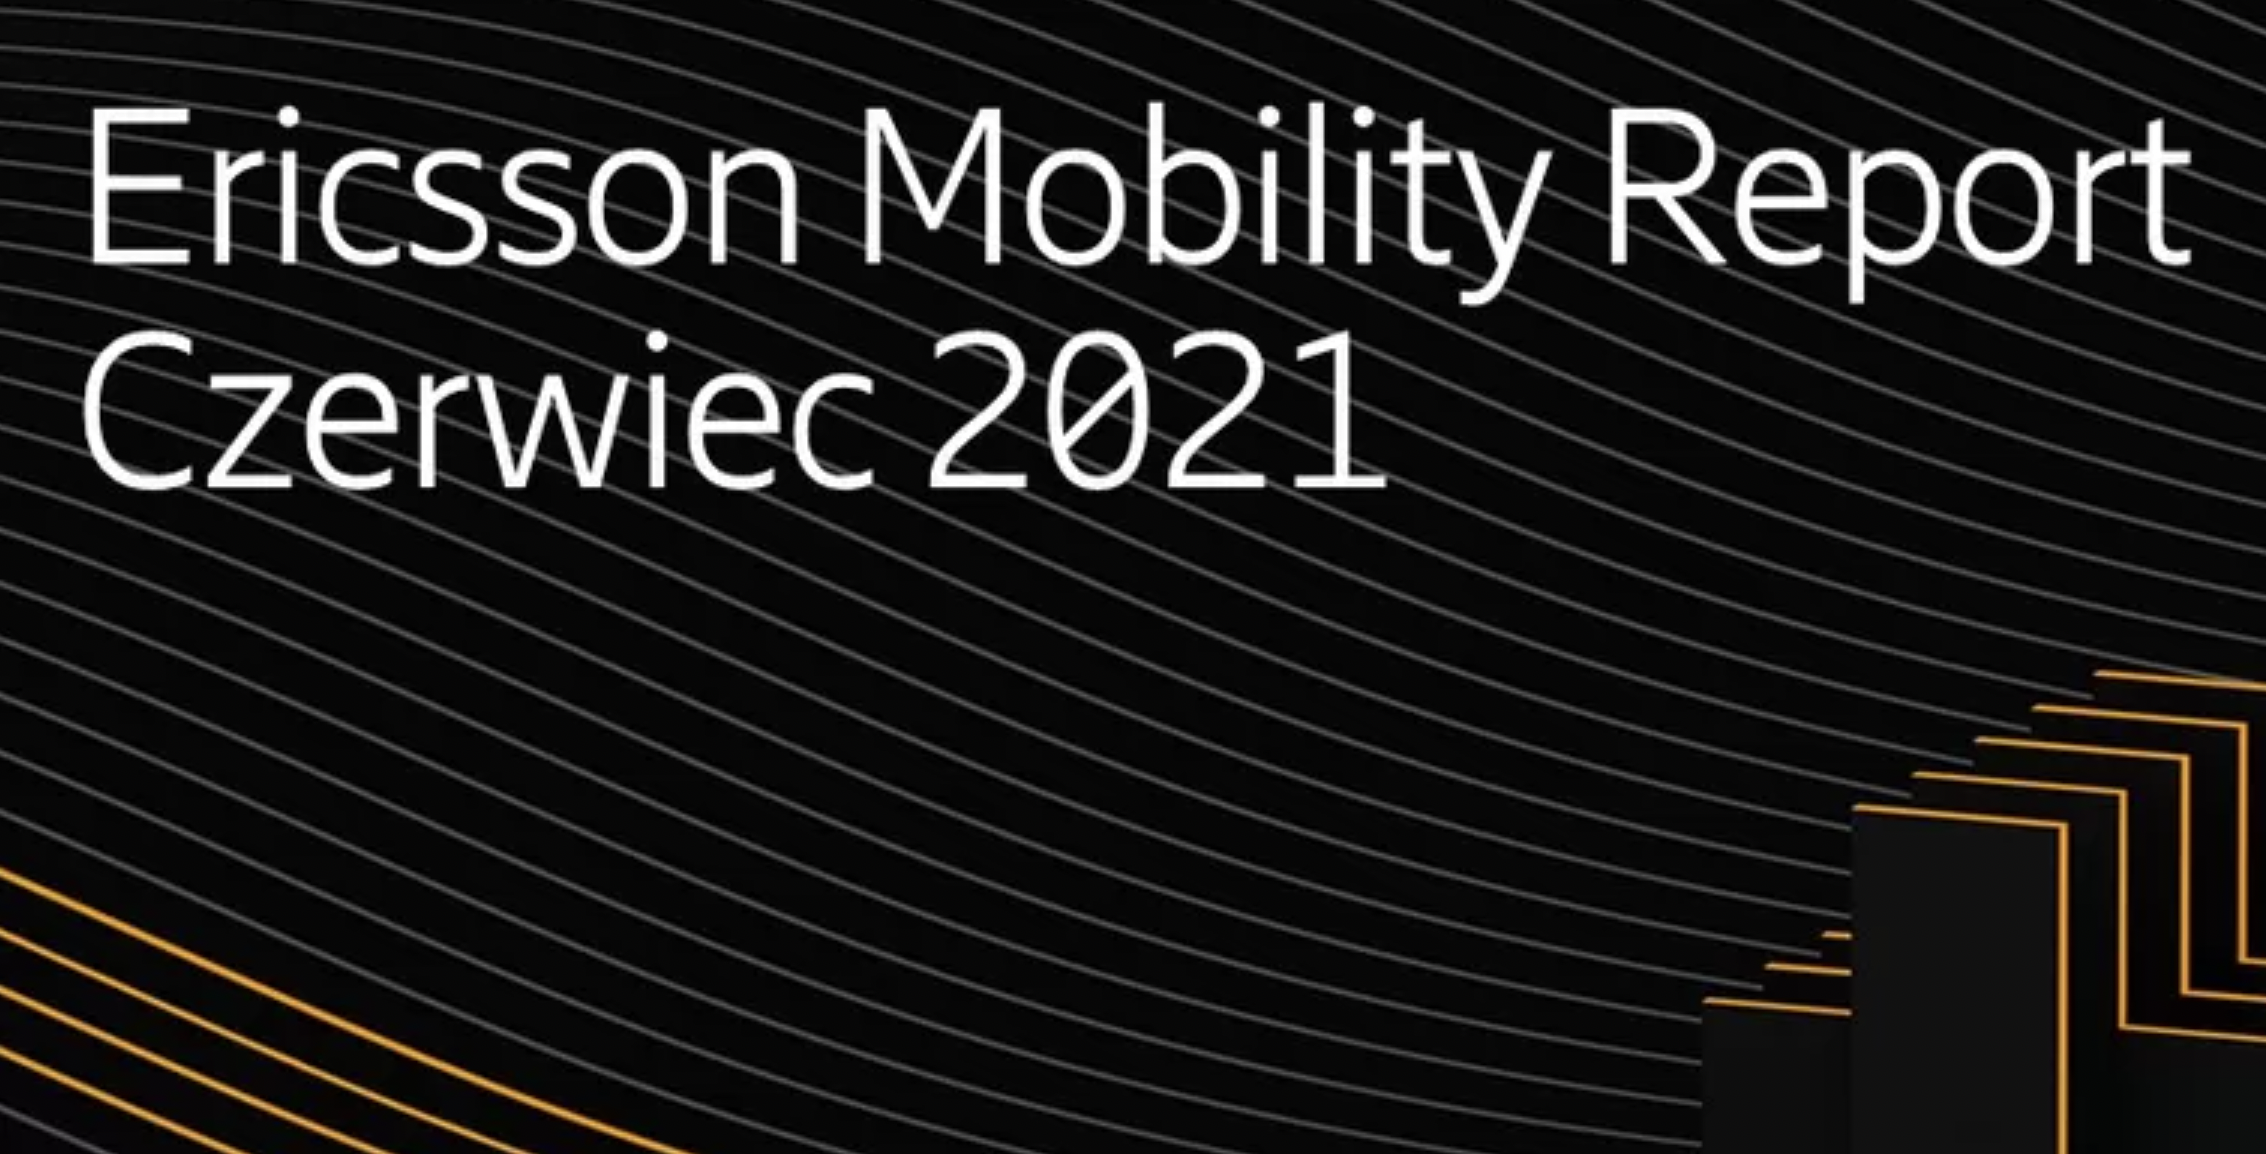 Liczba abonentów 5G przekroczy pół miliarda do końca roku 2021 – Ericsson Mobility Report